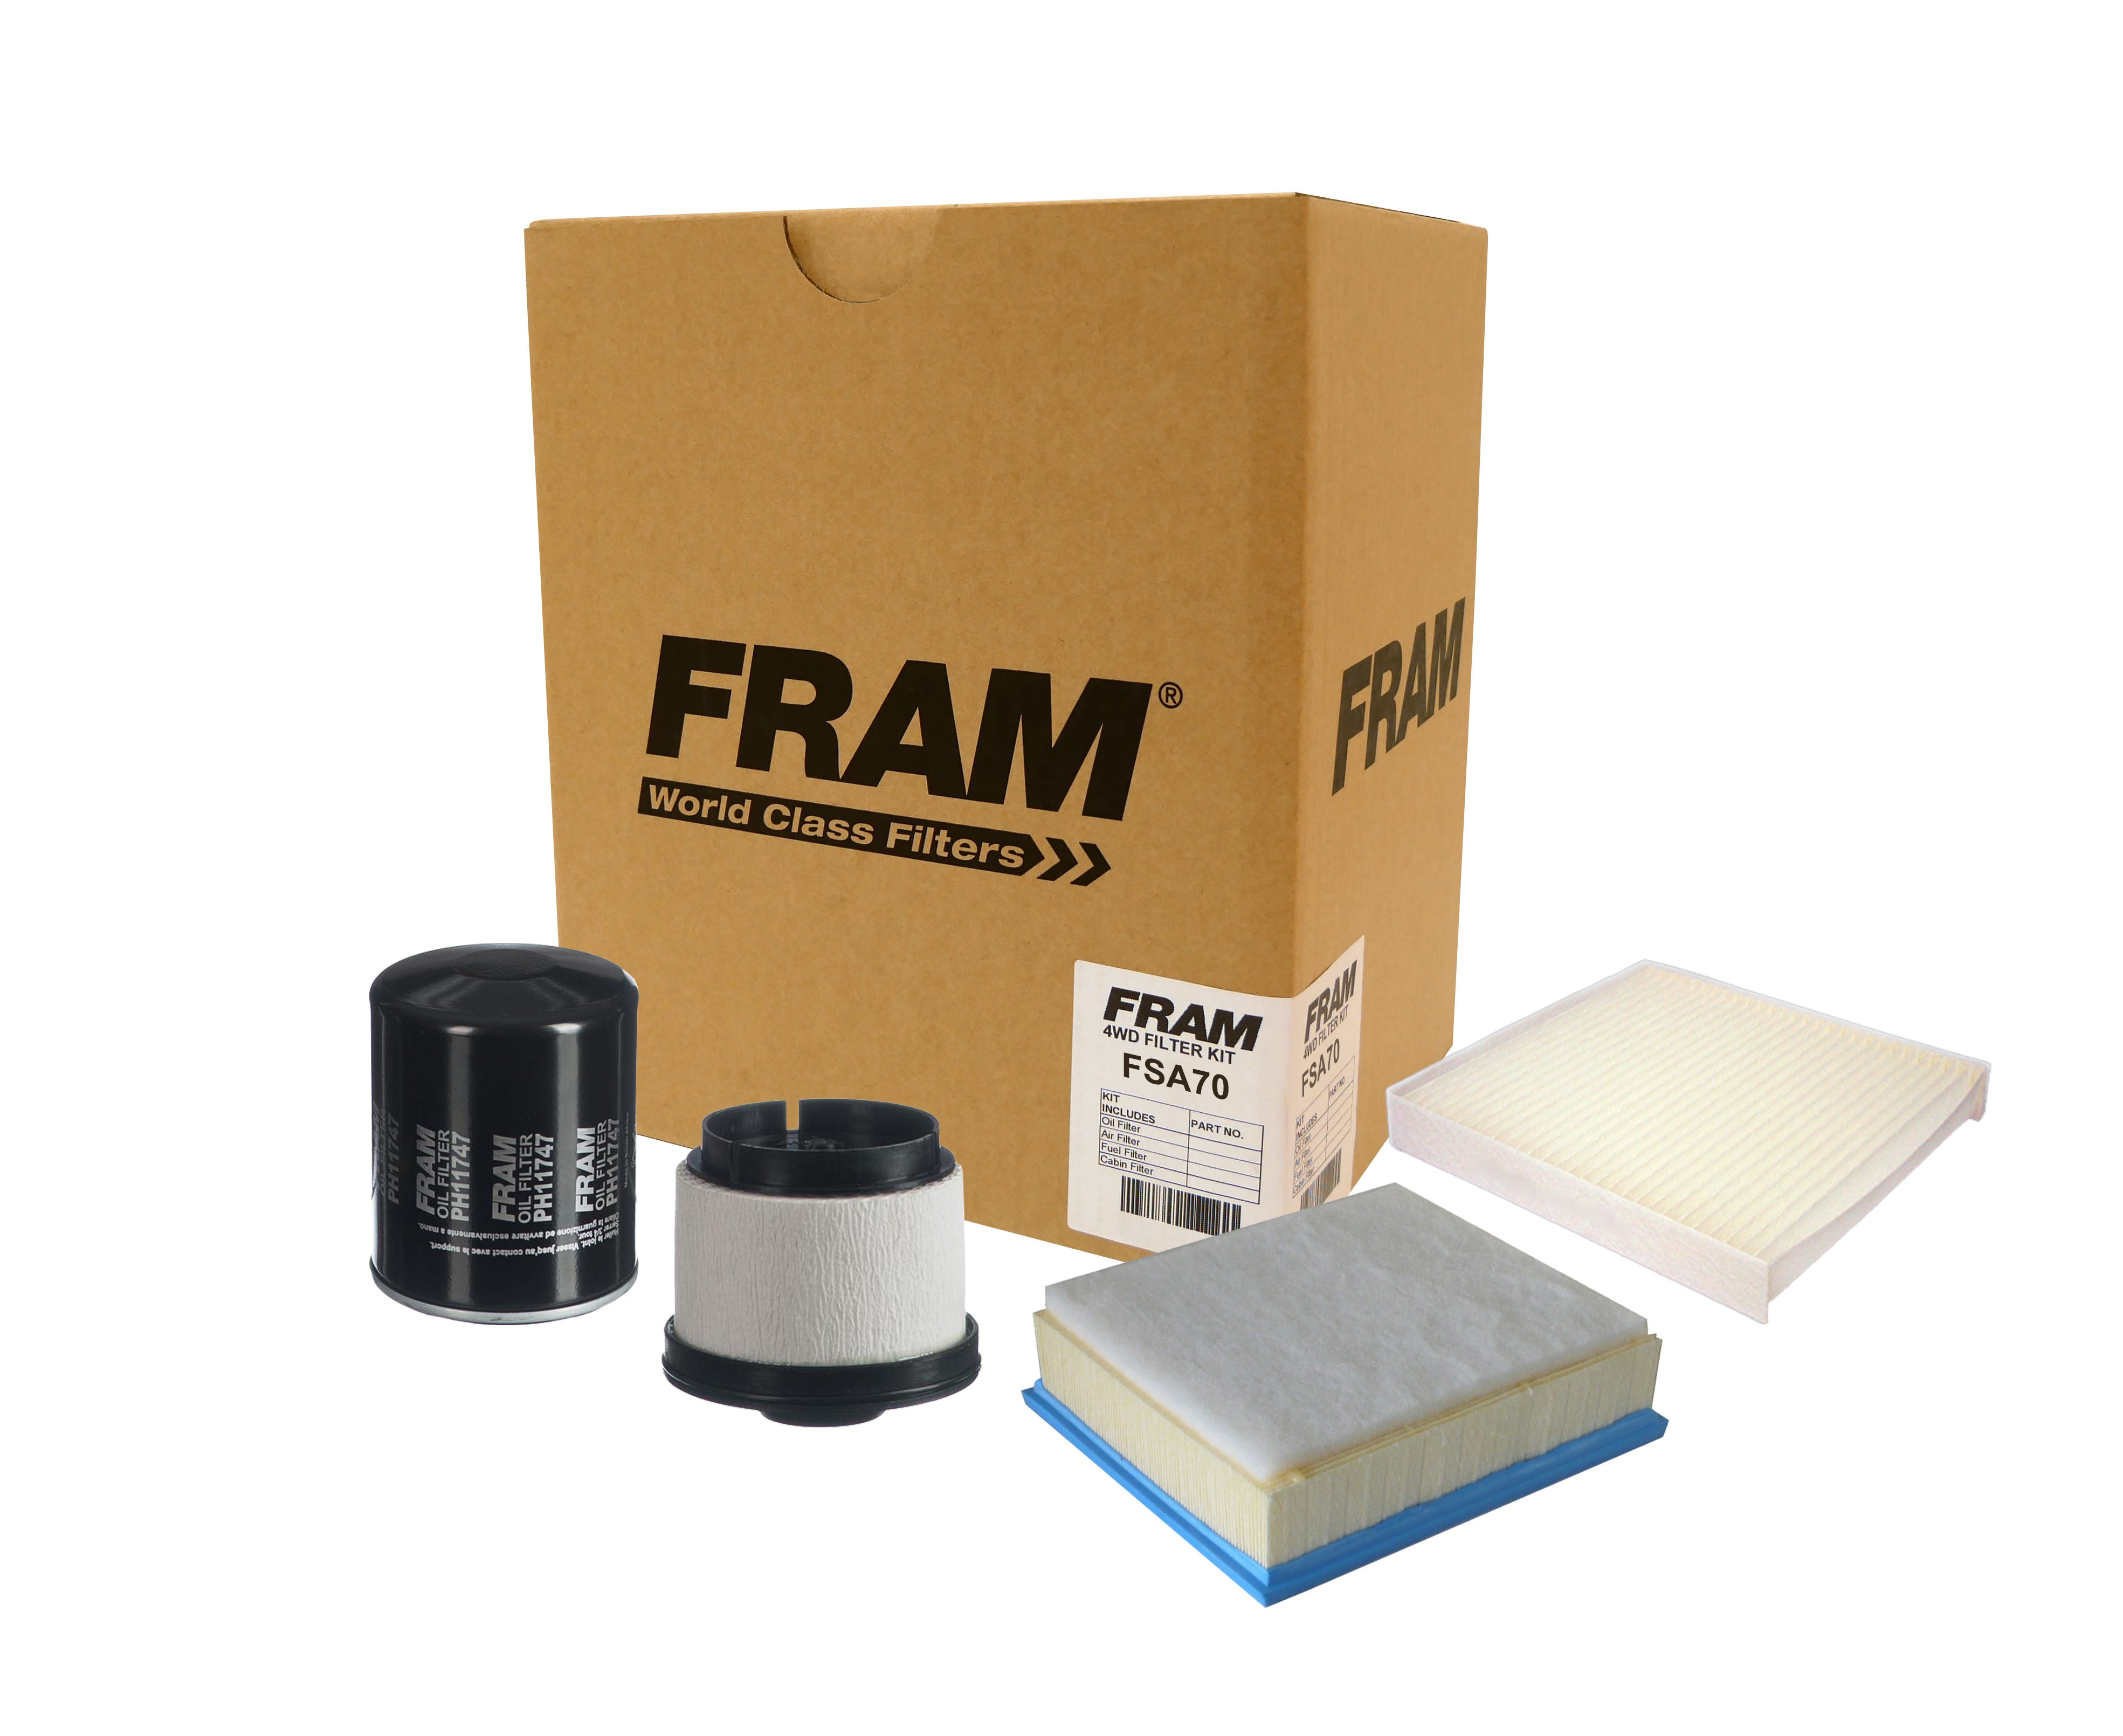 FRAM 4wd Filter Kit for Isuzu D-Max & MU-X | FRAM